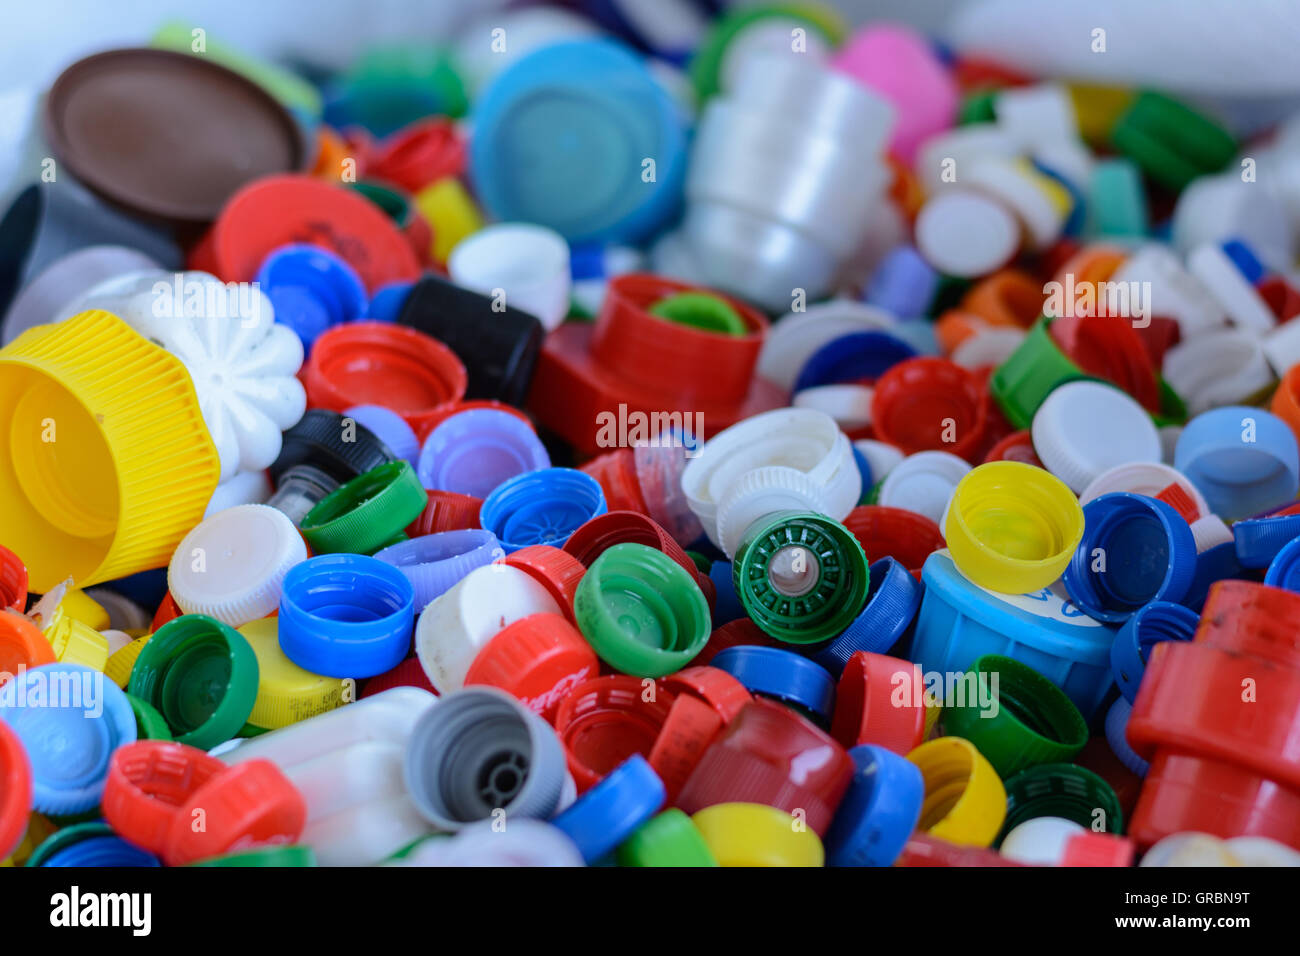 Le recyclage - Des bouchons à vis pour des flacons en plastique PET - Recyclage Banque D'Images